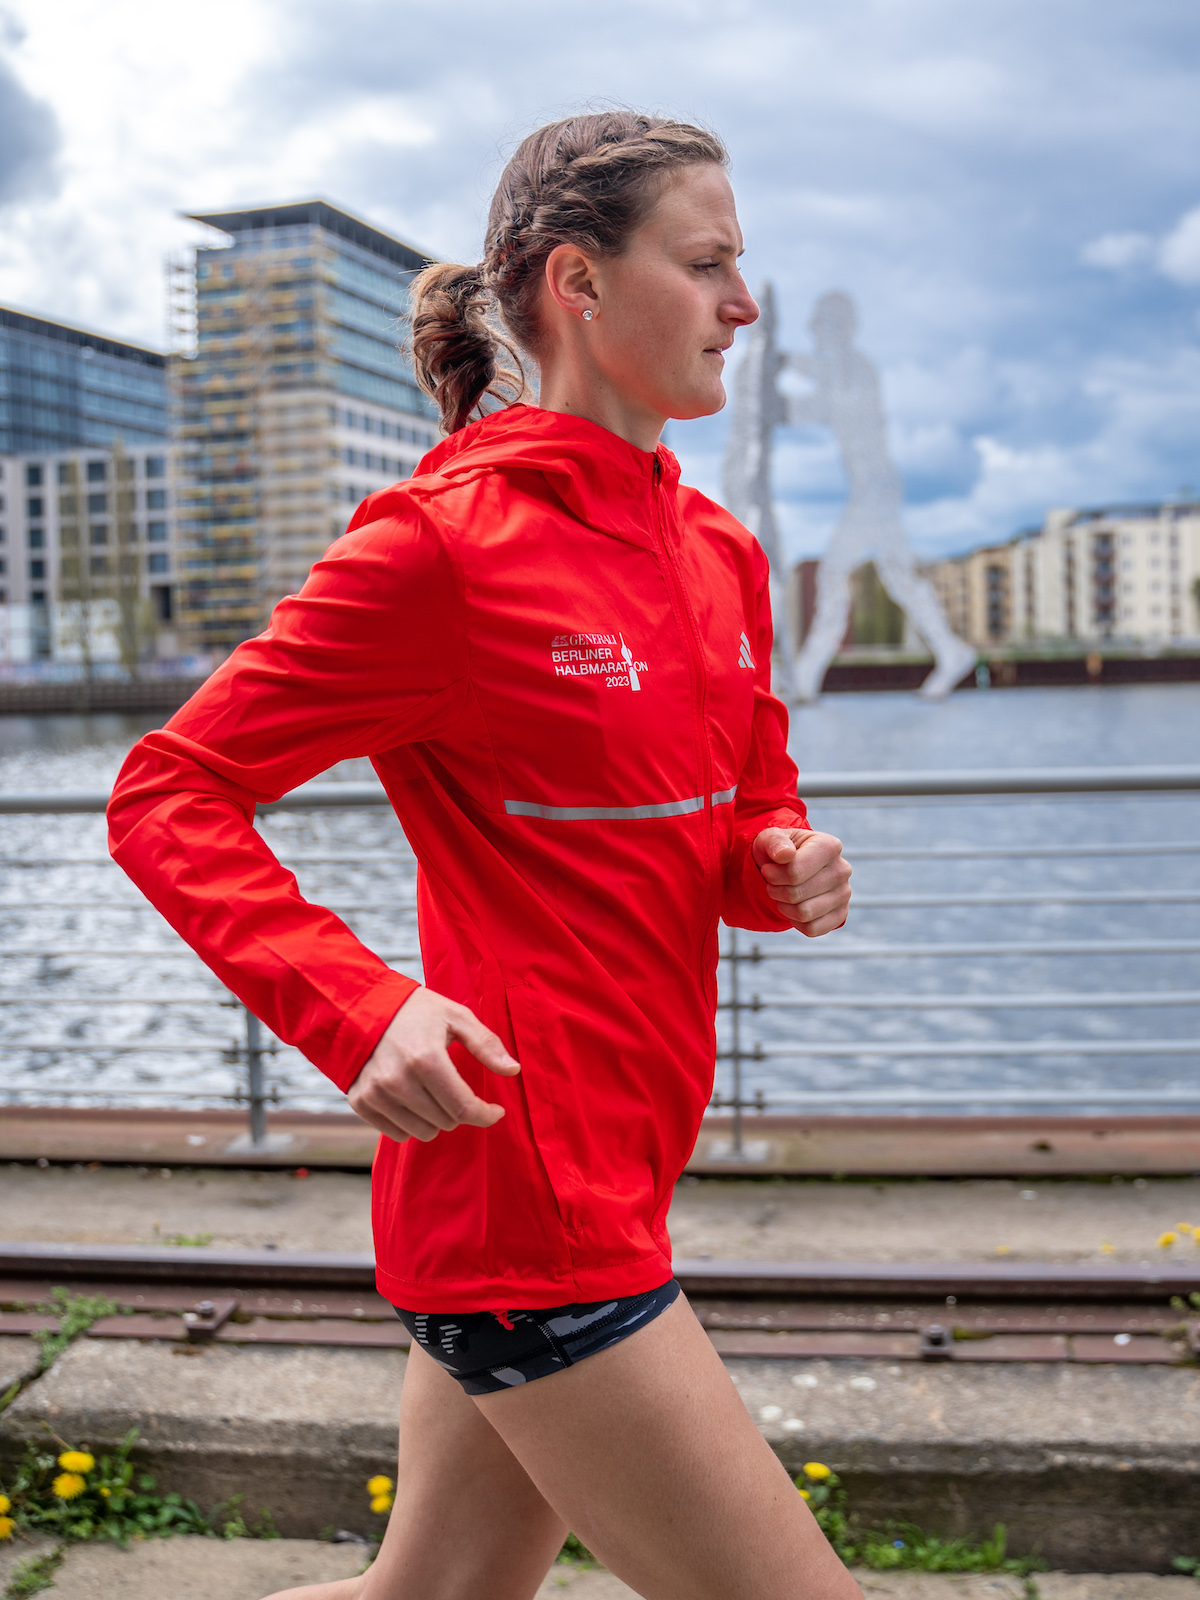 Marathonläuferin Debbie Schöneborn trainiert am Spreeufer